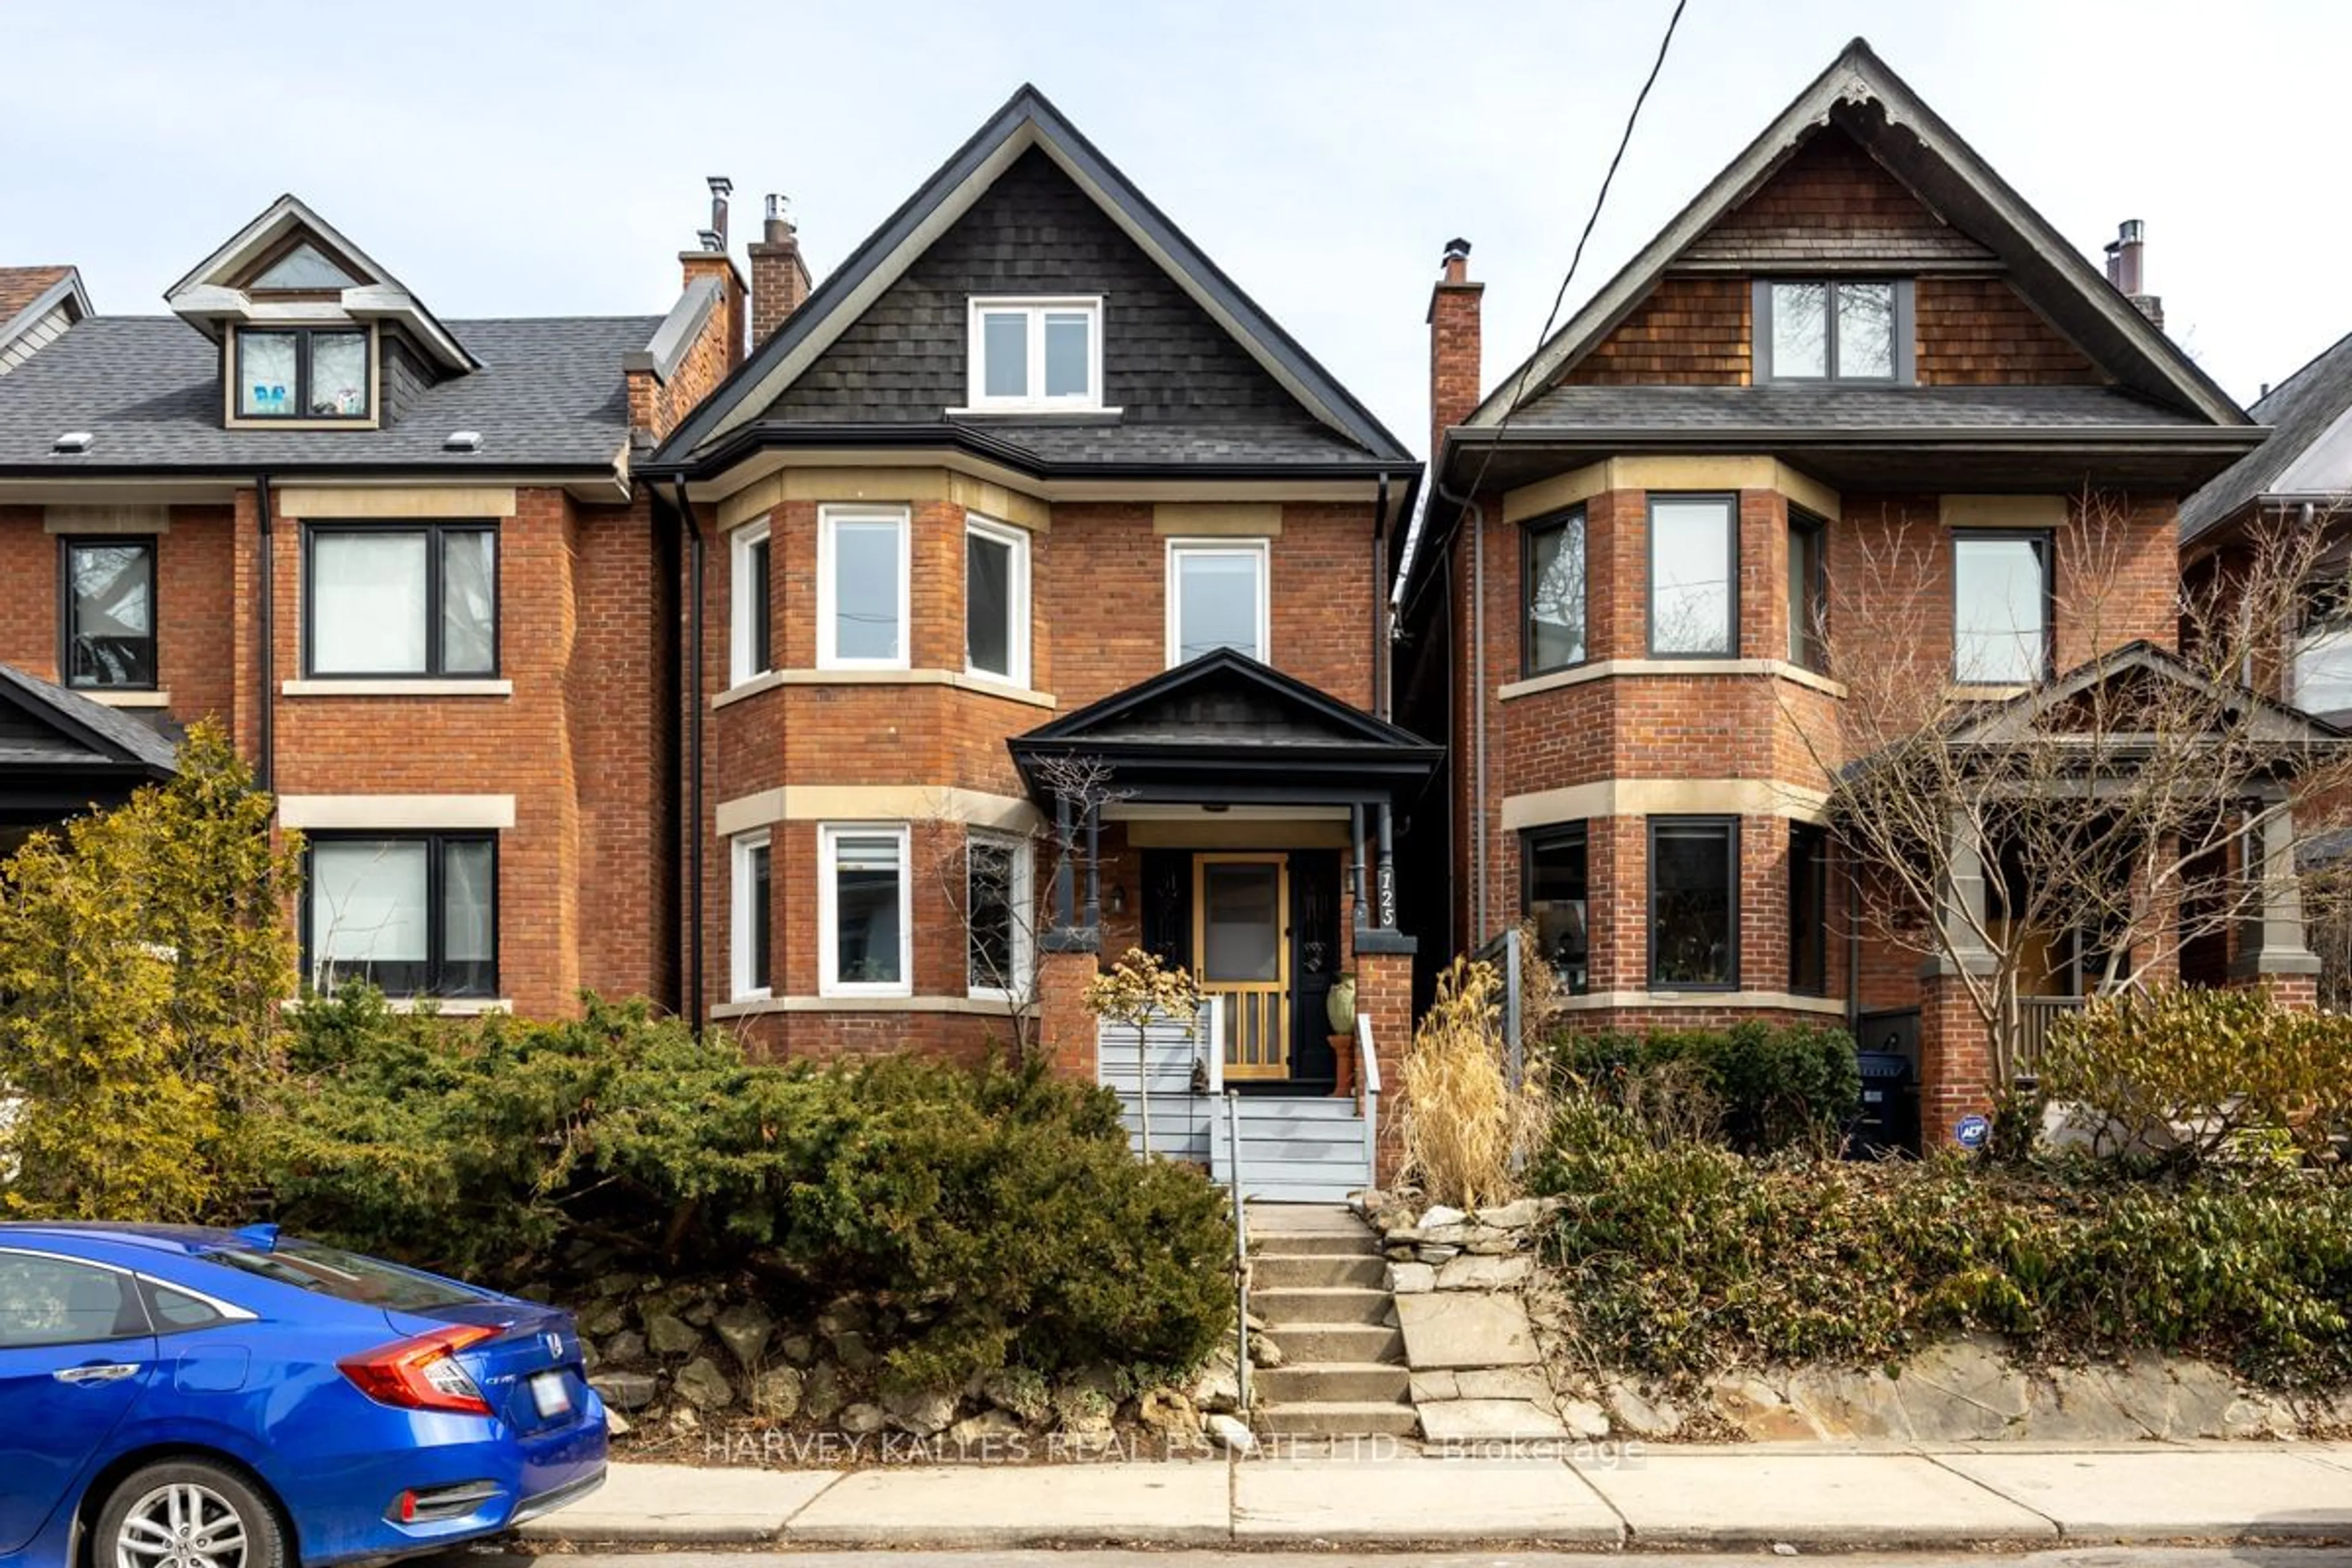 Home with brick exterior material for 125 Hilton Ave, Toronto Ontario M5R 3E8